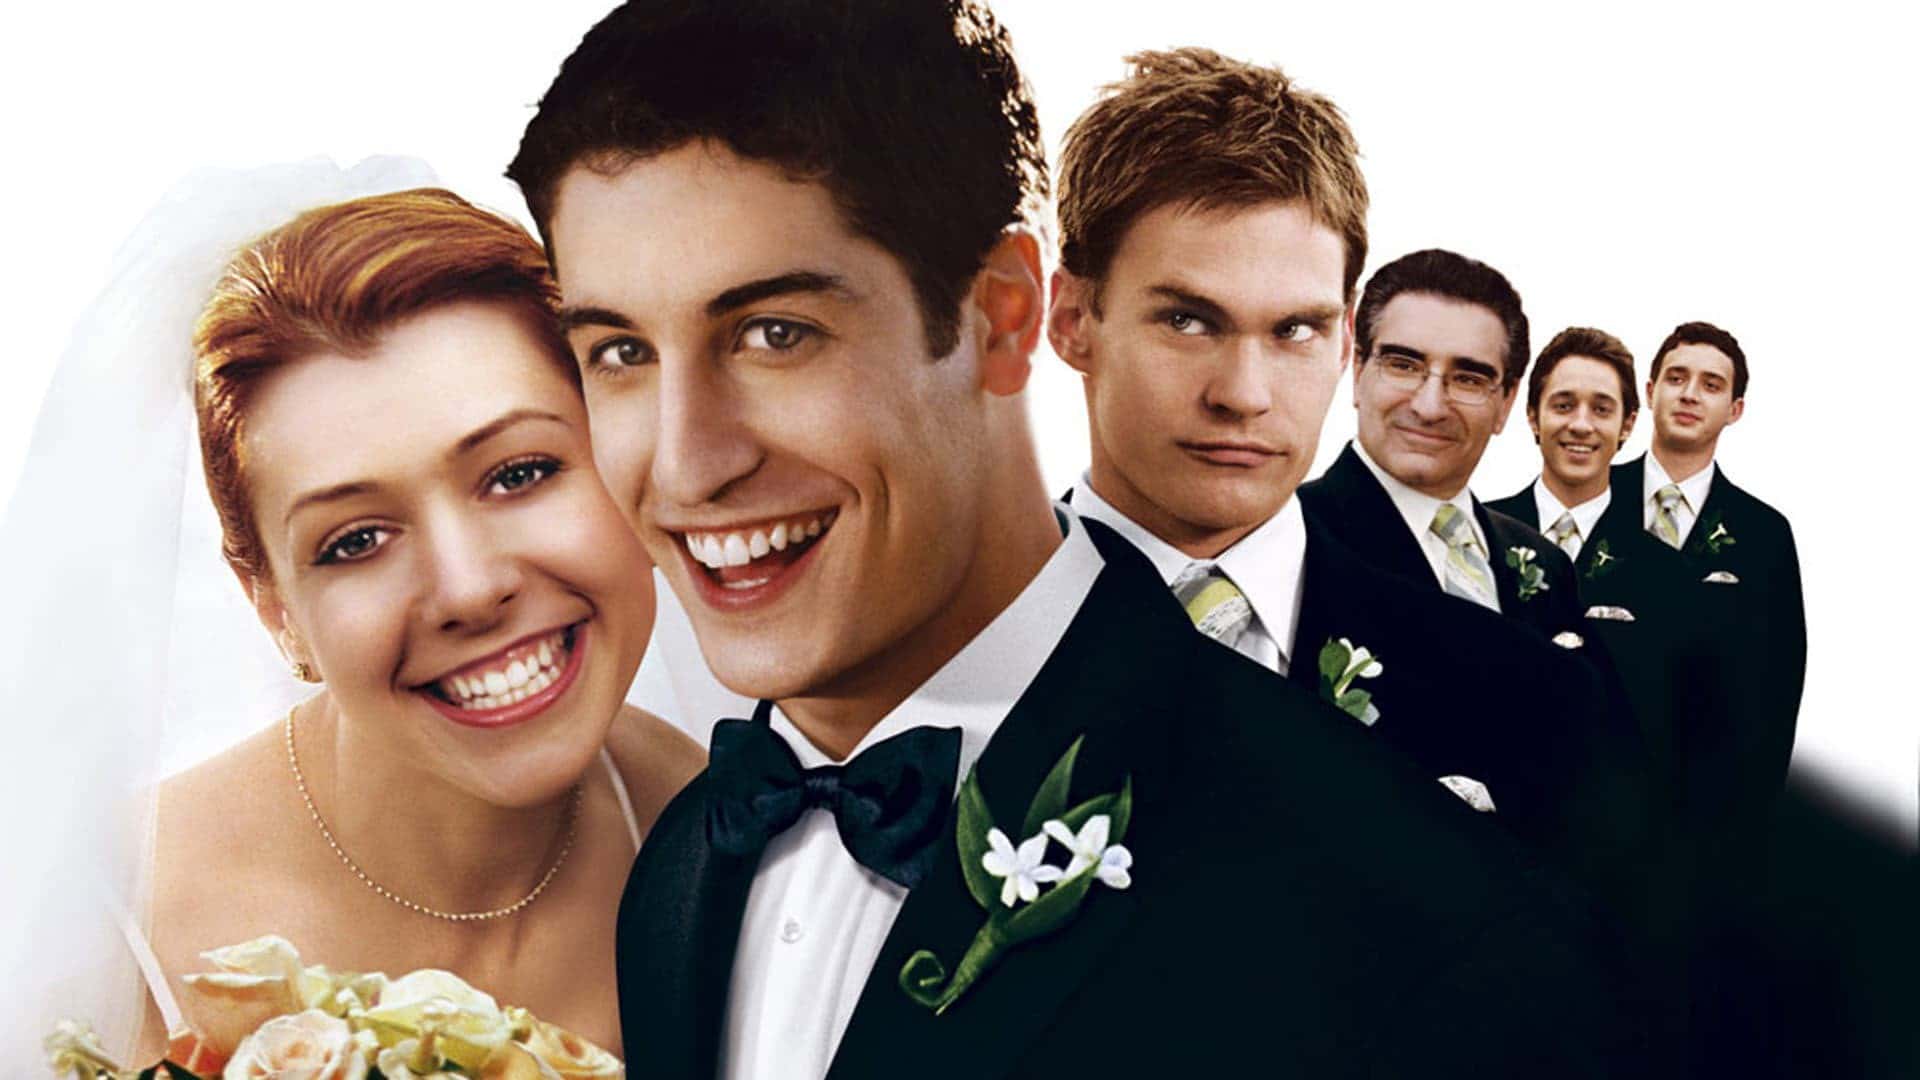 دانلود فیلم American Wedding 2003